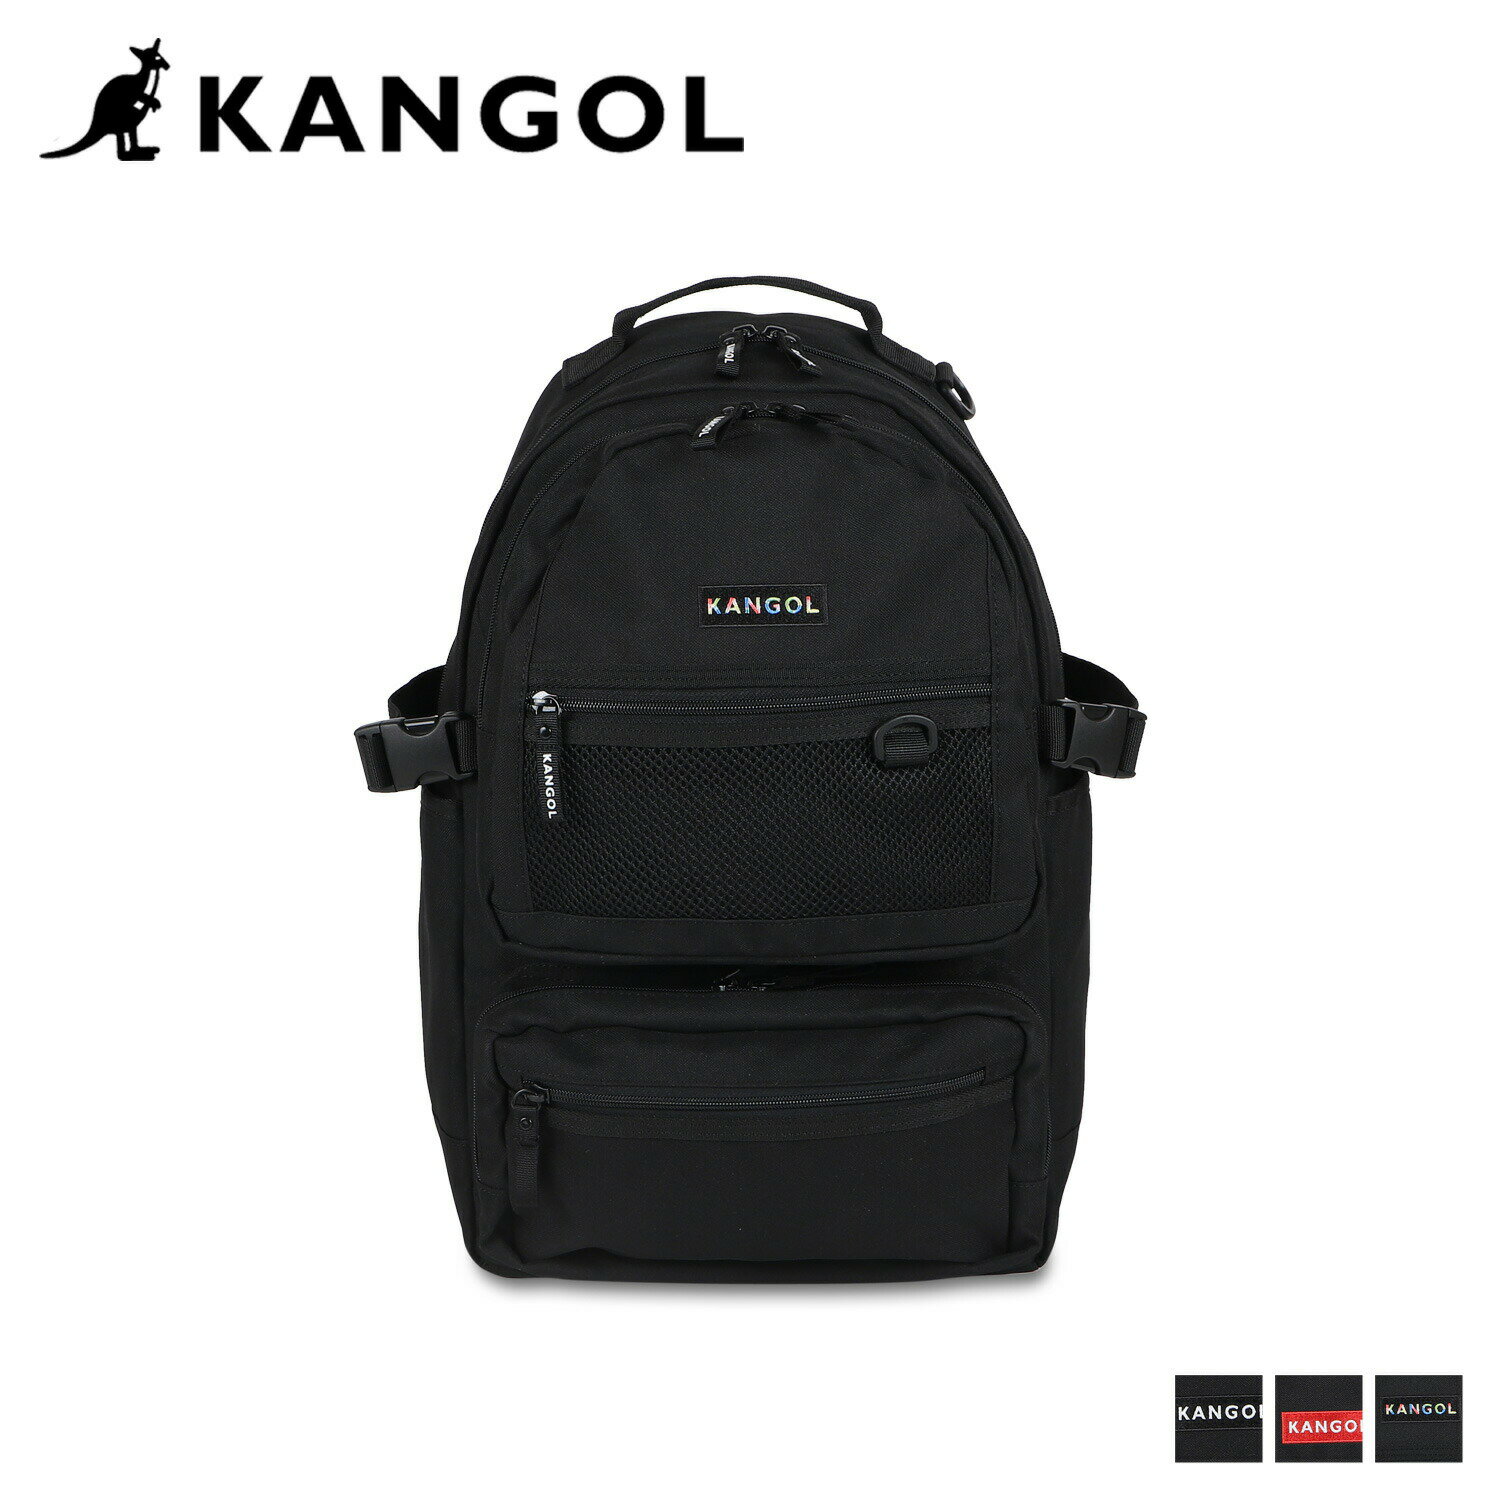 KANGOL RUCKSACK カンゴール リュック バッグ バックパック メンズ レディース 25L 大容量 ブラック 黒 250-1292